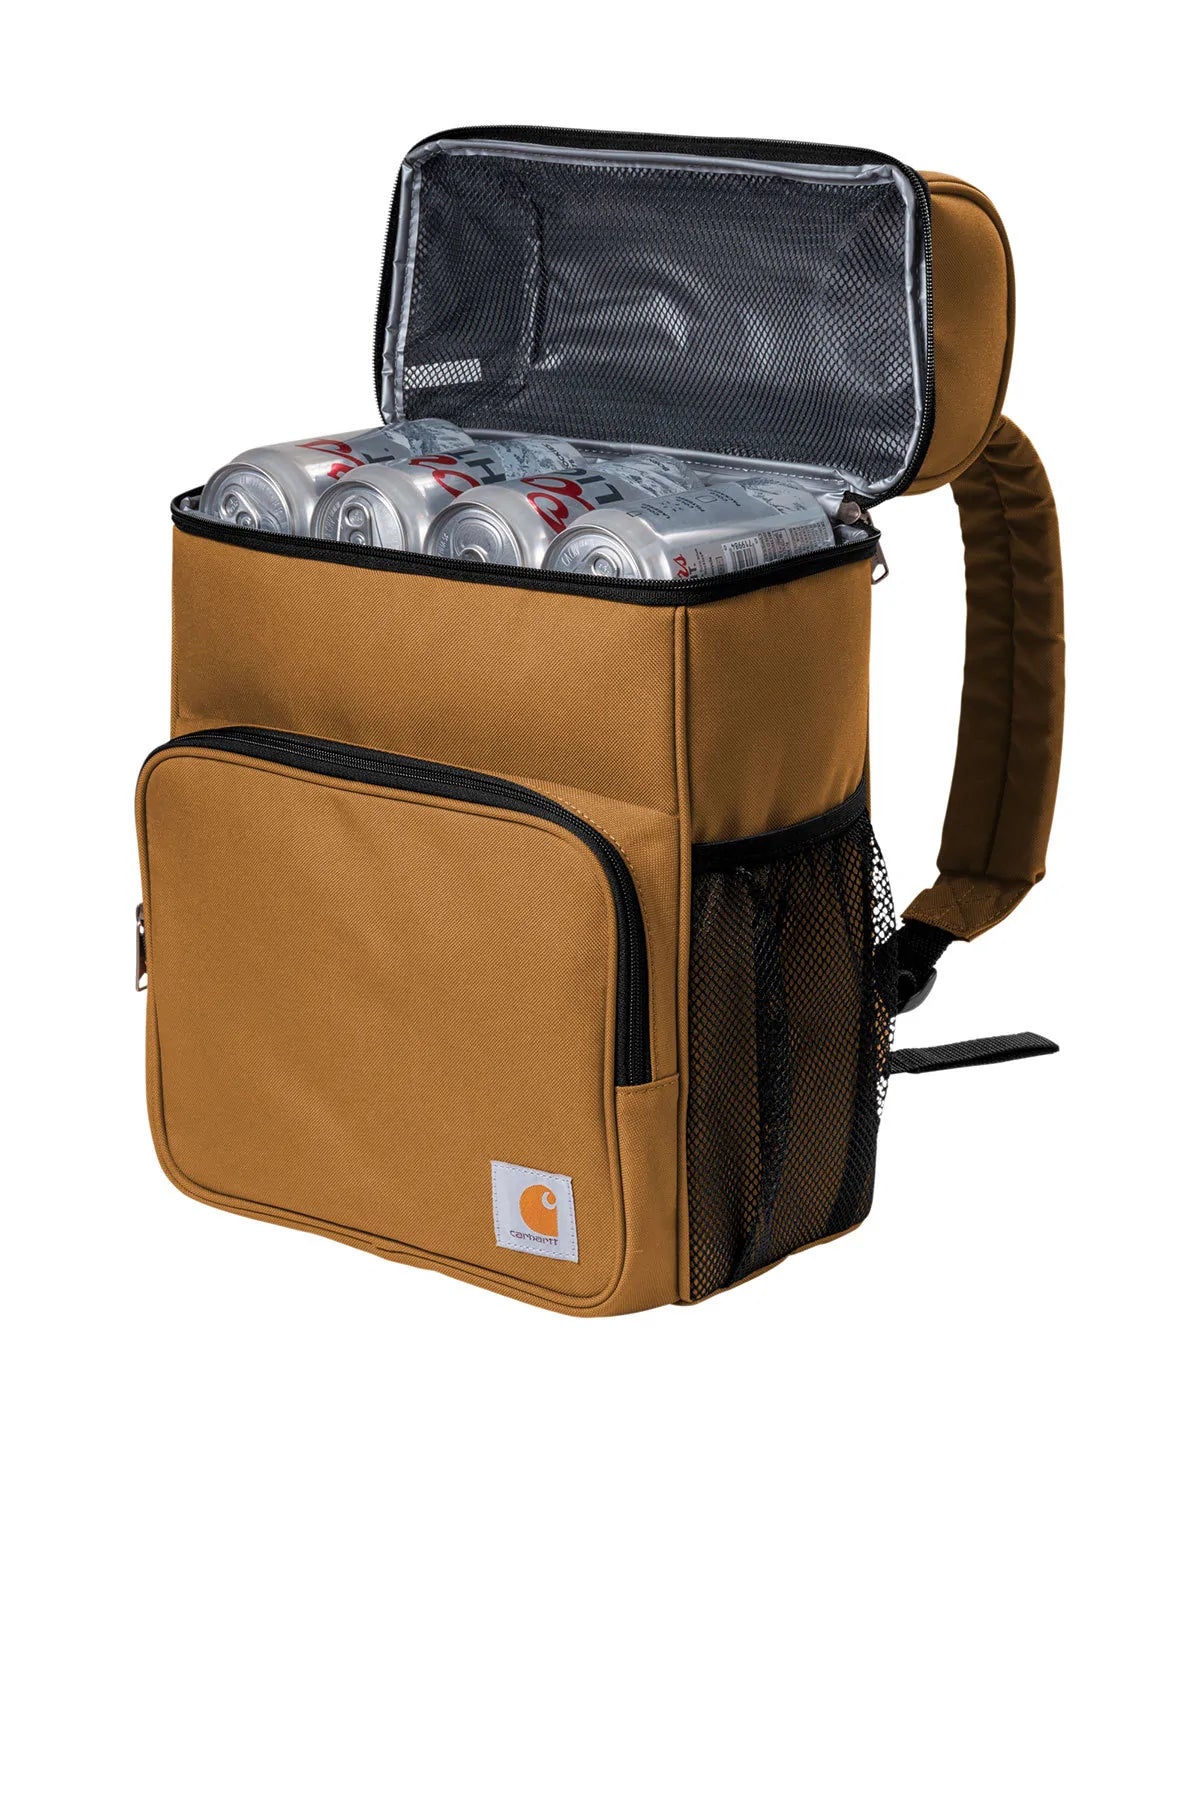 Carhartt Backpack, 20-Can Cooler, Carhartt Brown